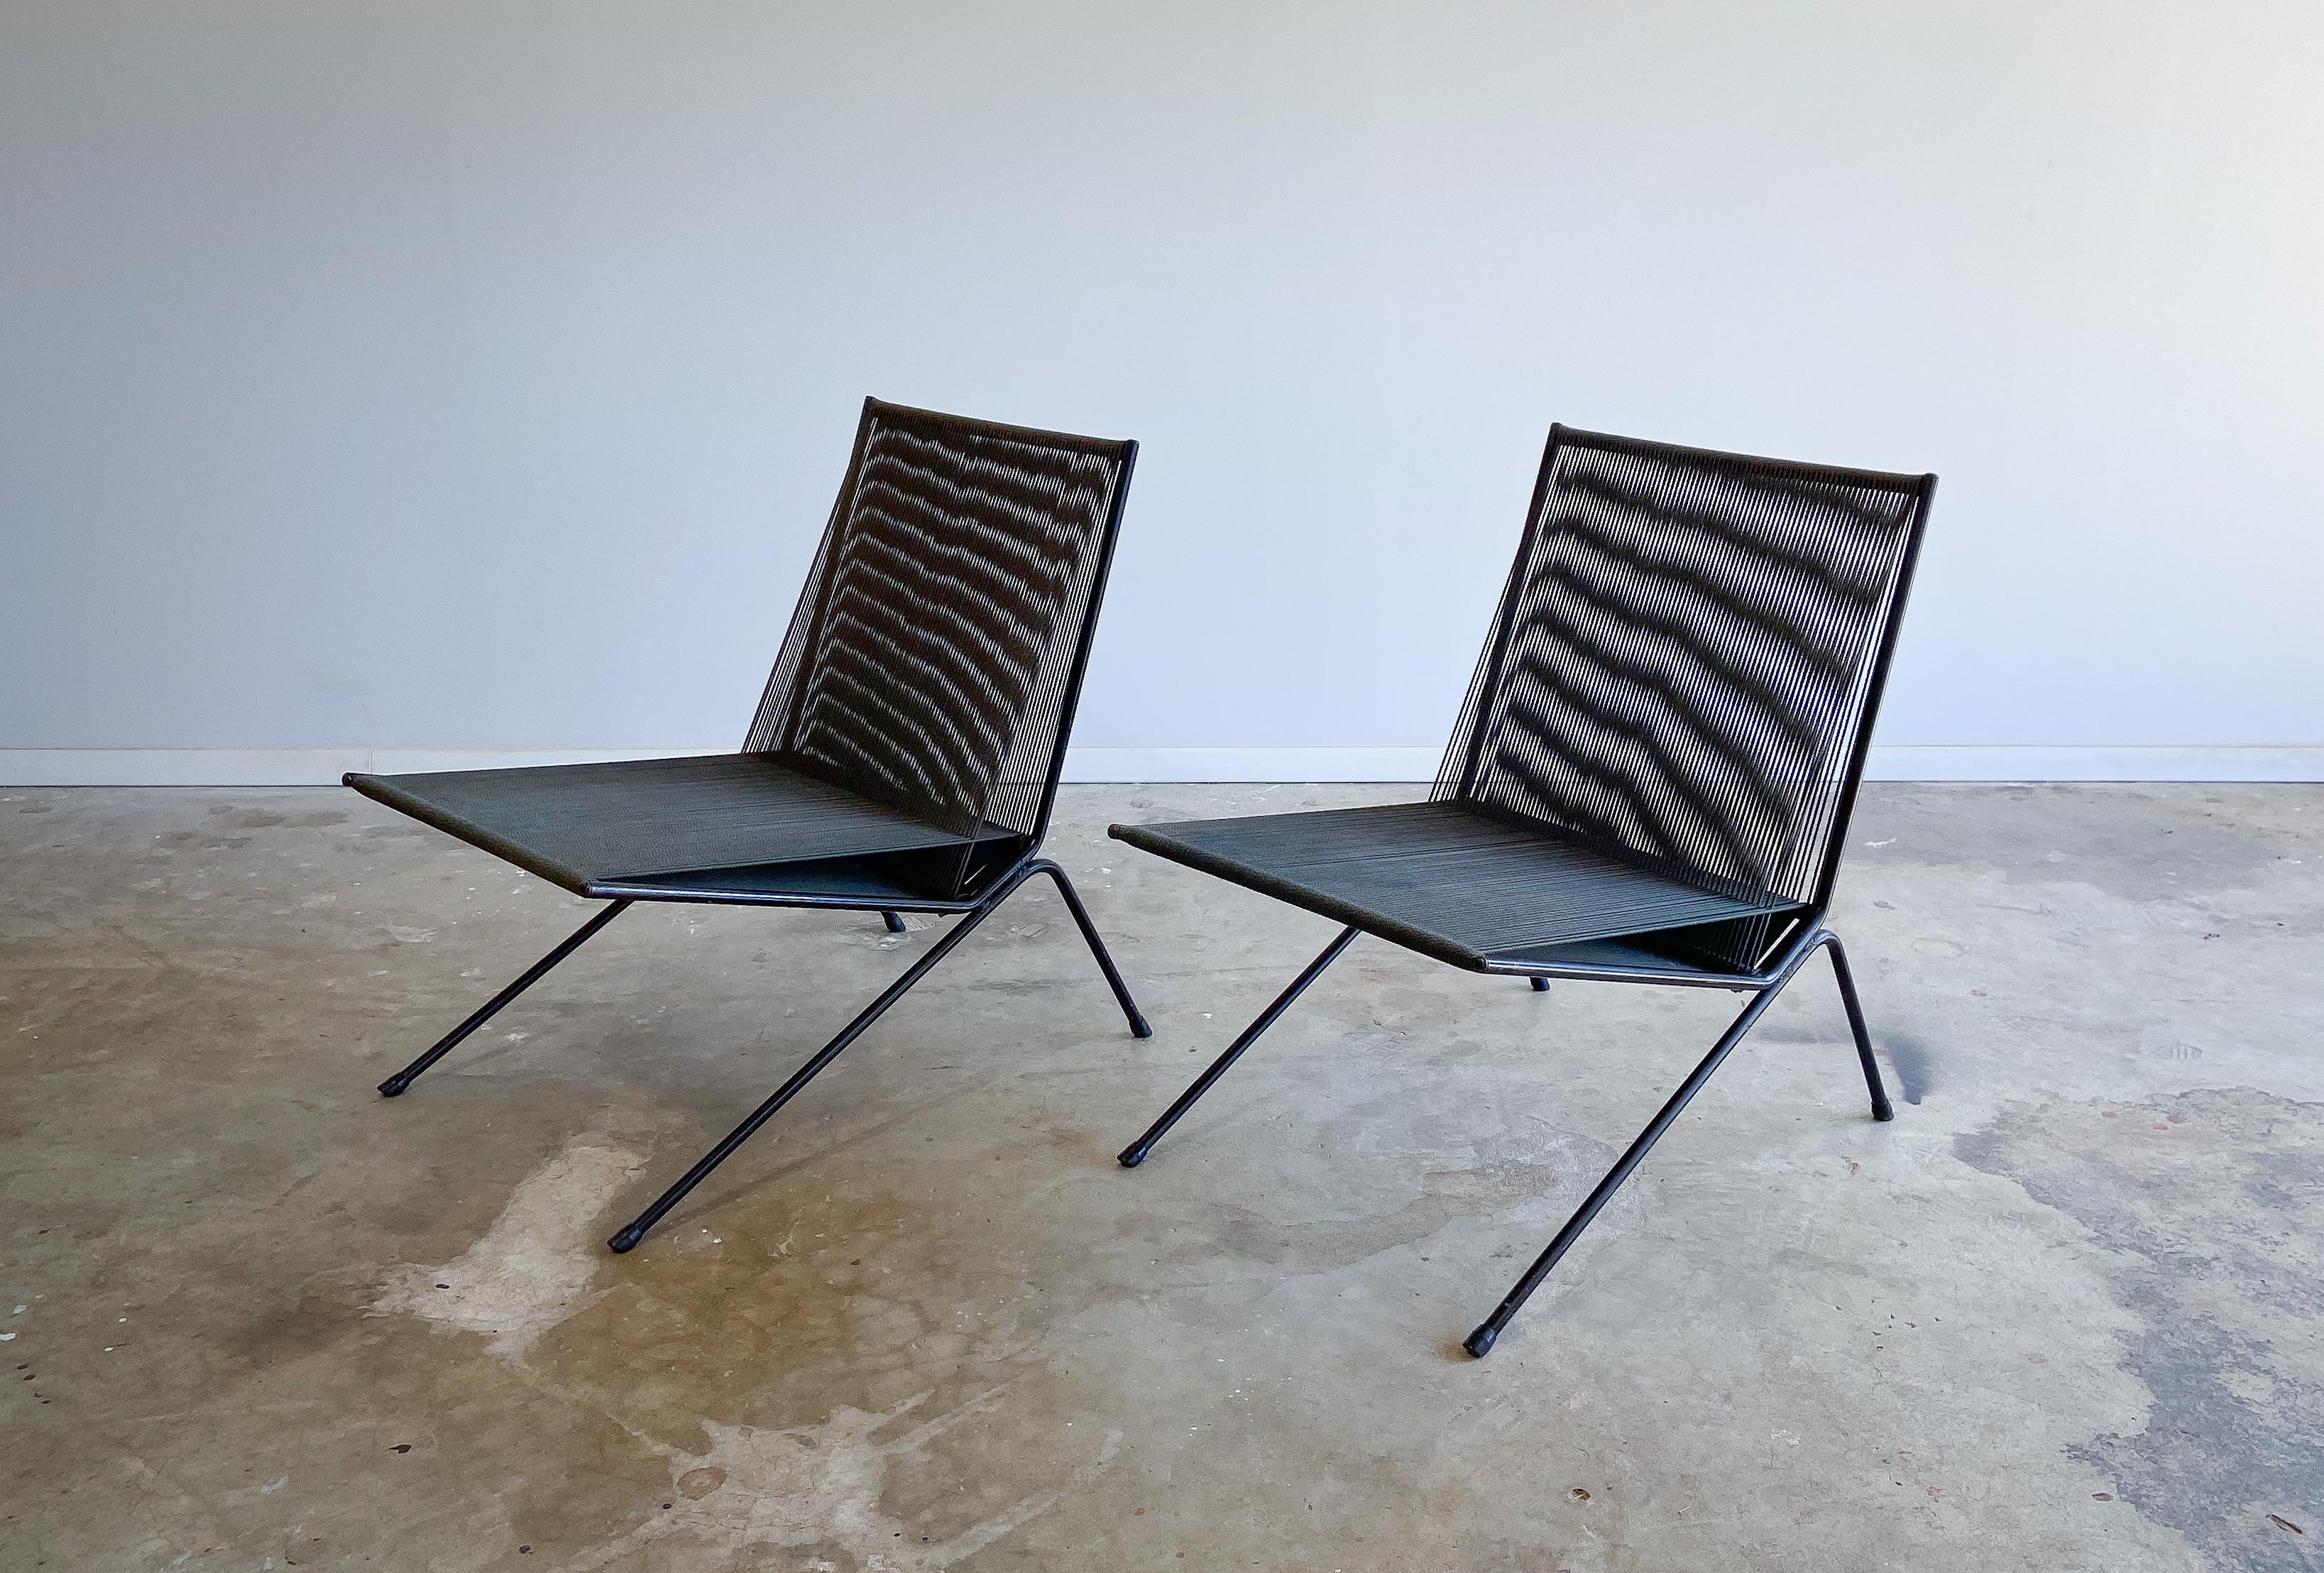 Paire de fauteuils d'intérieur/extérieur en fer et corde, conçus par Allan Gould pour Functional Furniture. Introduits à l'origine en 1952, nous pensons qu'il s'agit de quelques-uns des premiers exemplaires, en raison de l'absence d'entretoises